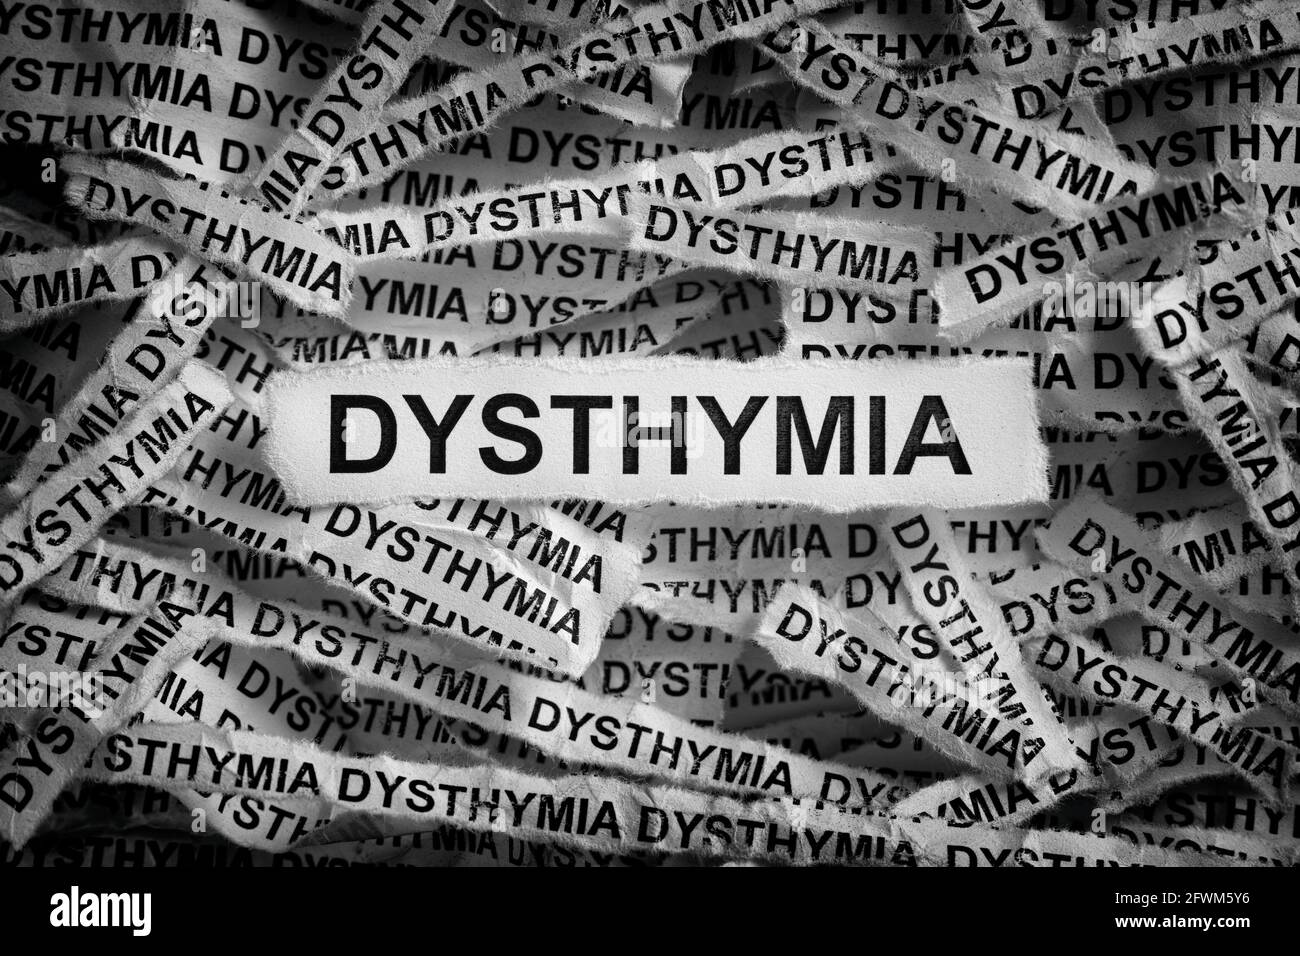 Distimia. Strappato pezzi di carta con le parole Dythymia. Immagine in bianco e nero. Primo piano. Foto Stock